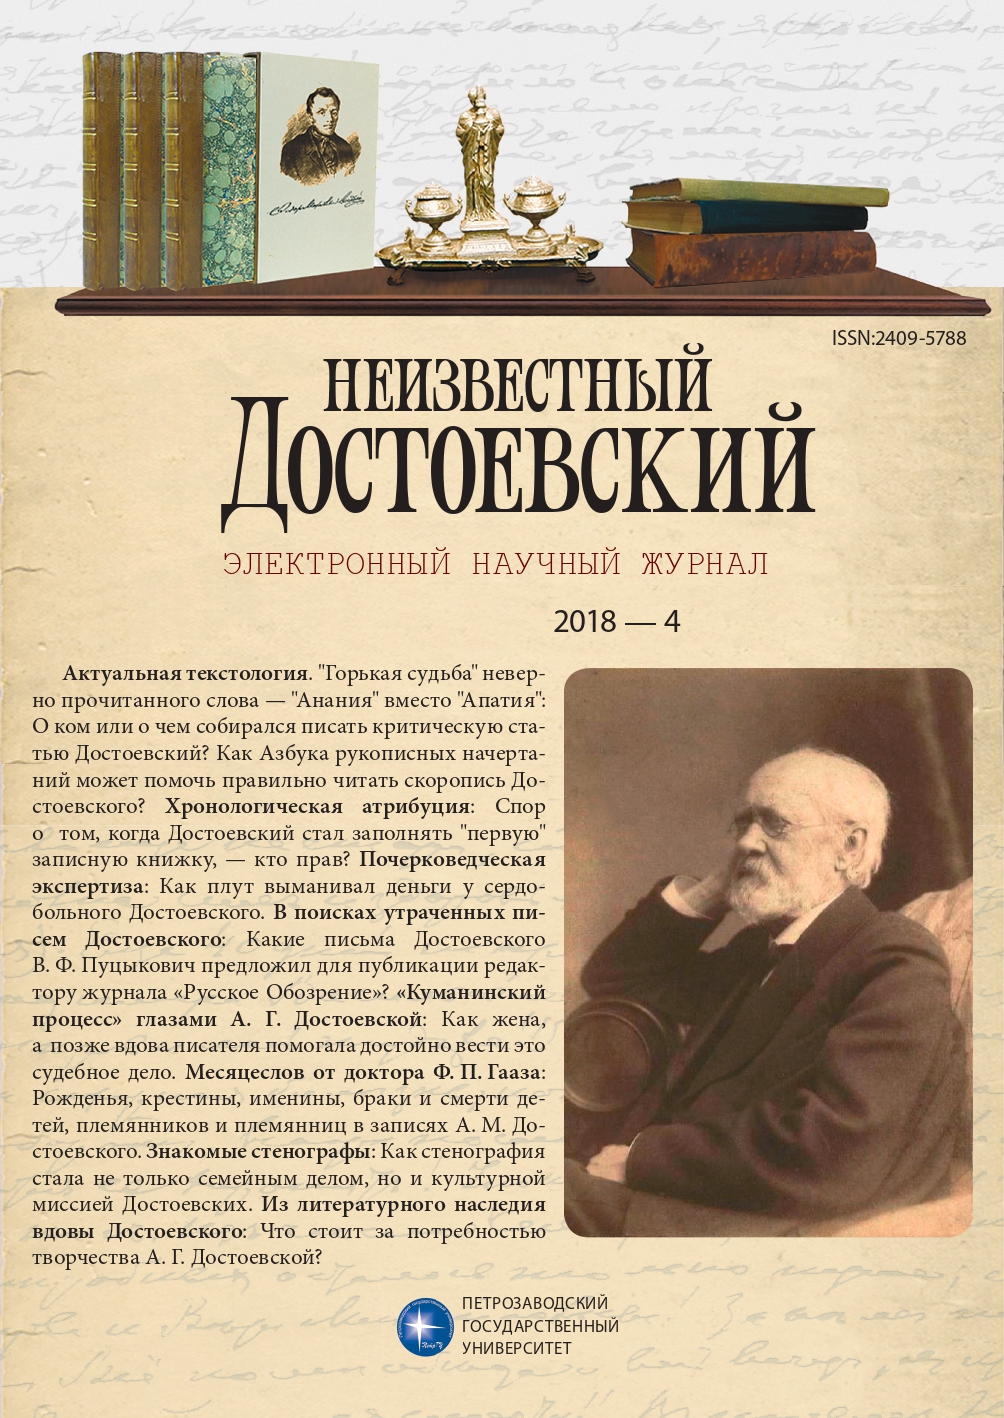 Письма Ф. М. Достоевского В. Ф. Пуцыковичу: История несостоявшейся публикации в «Русском Обозрении»